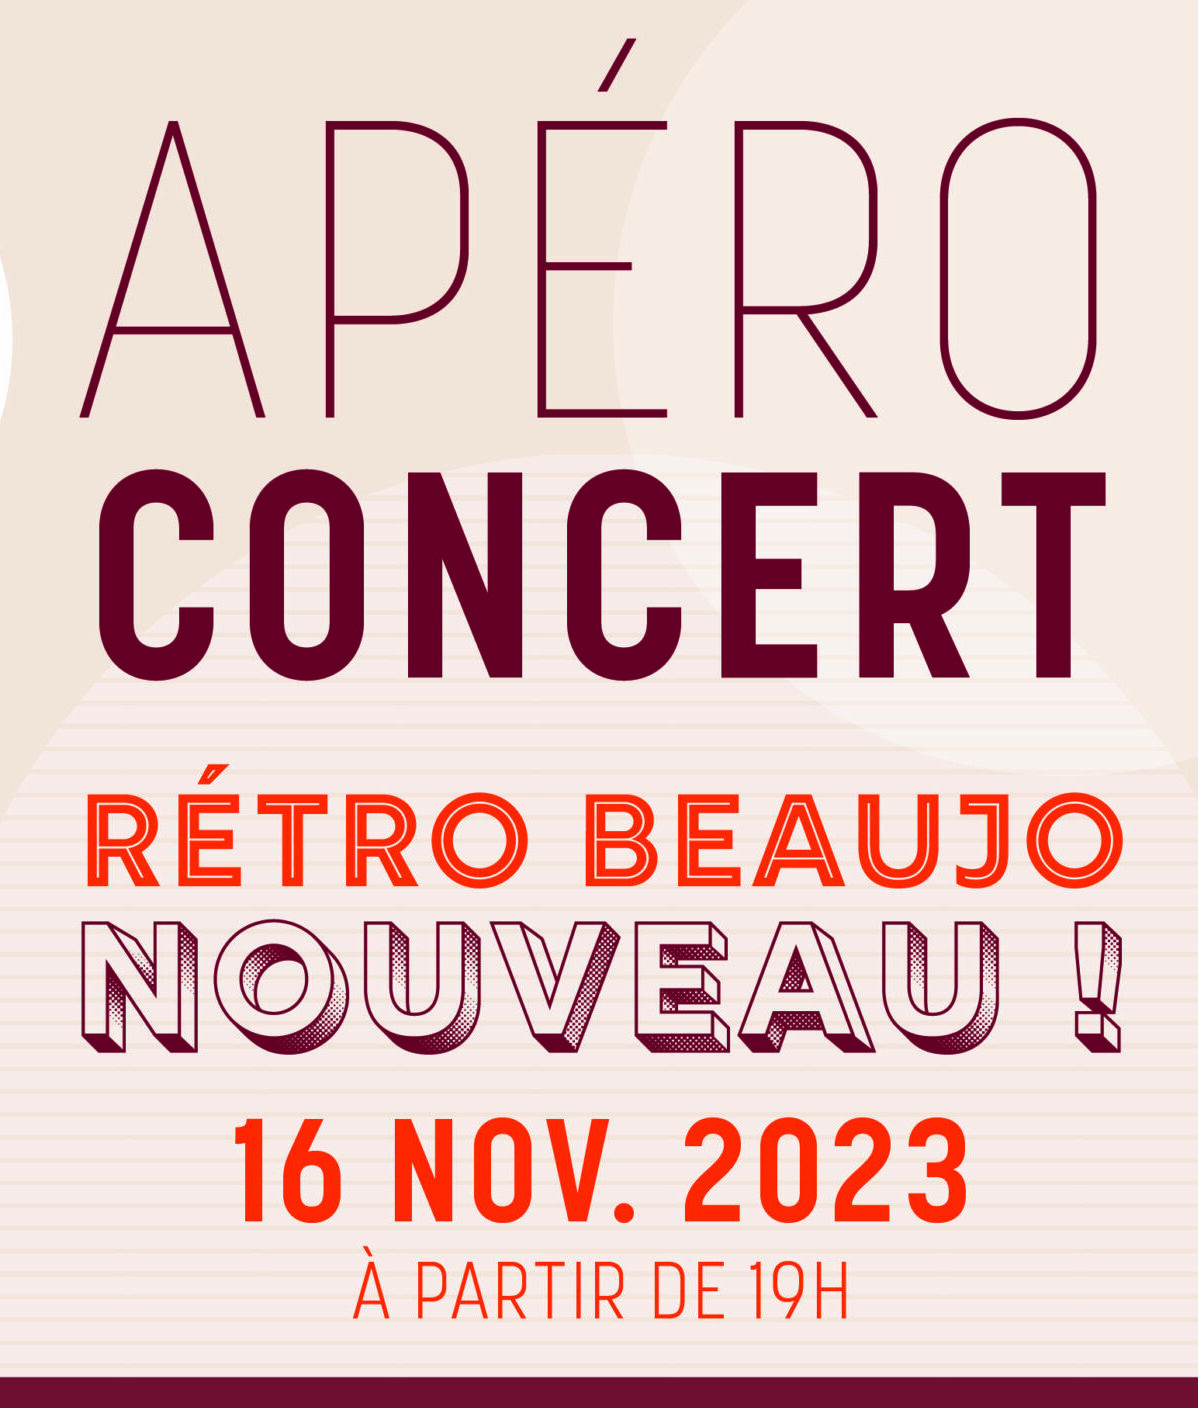 Apéro Concert “Rétro Beaujo Nouveau”